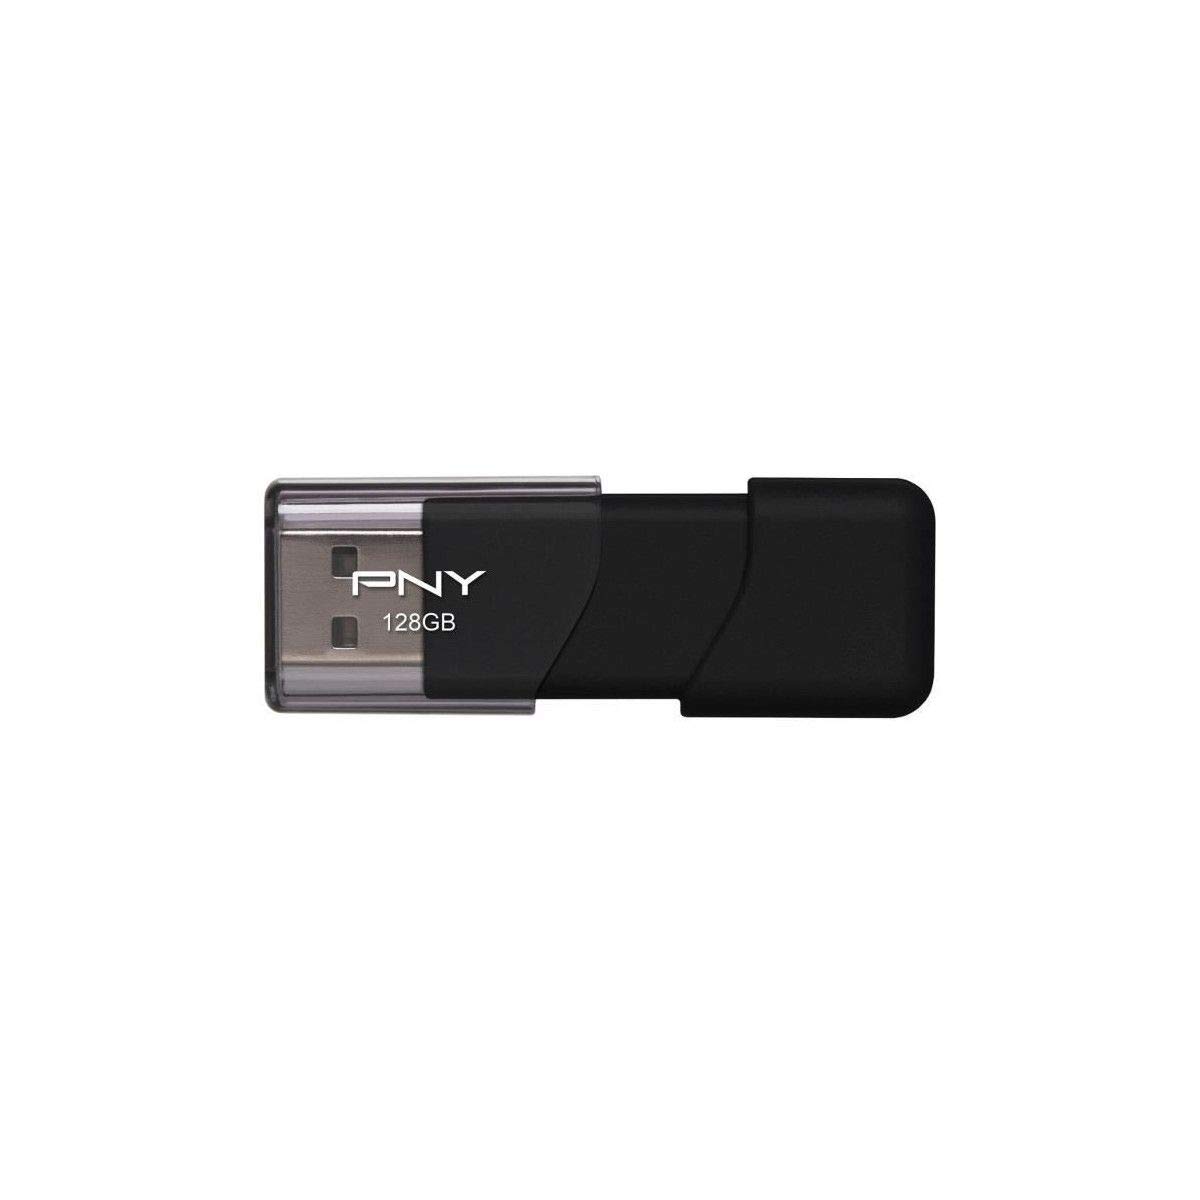 FD 128GB Attache 4 USB2.0 Black